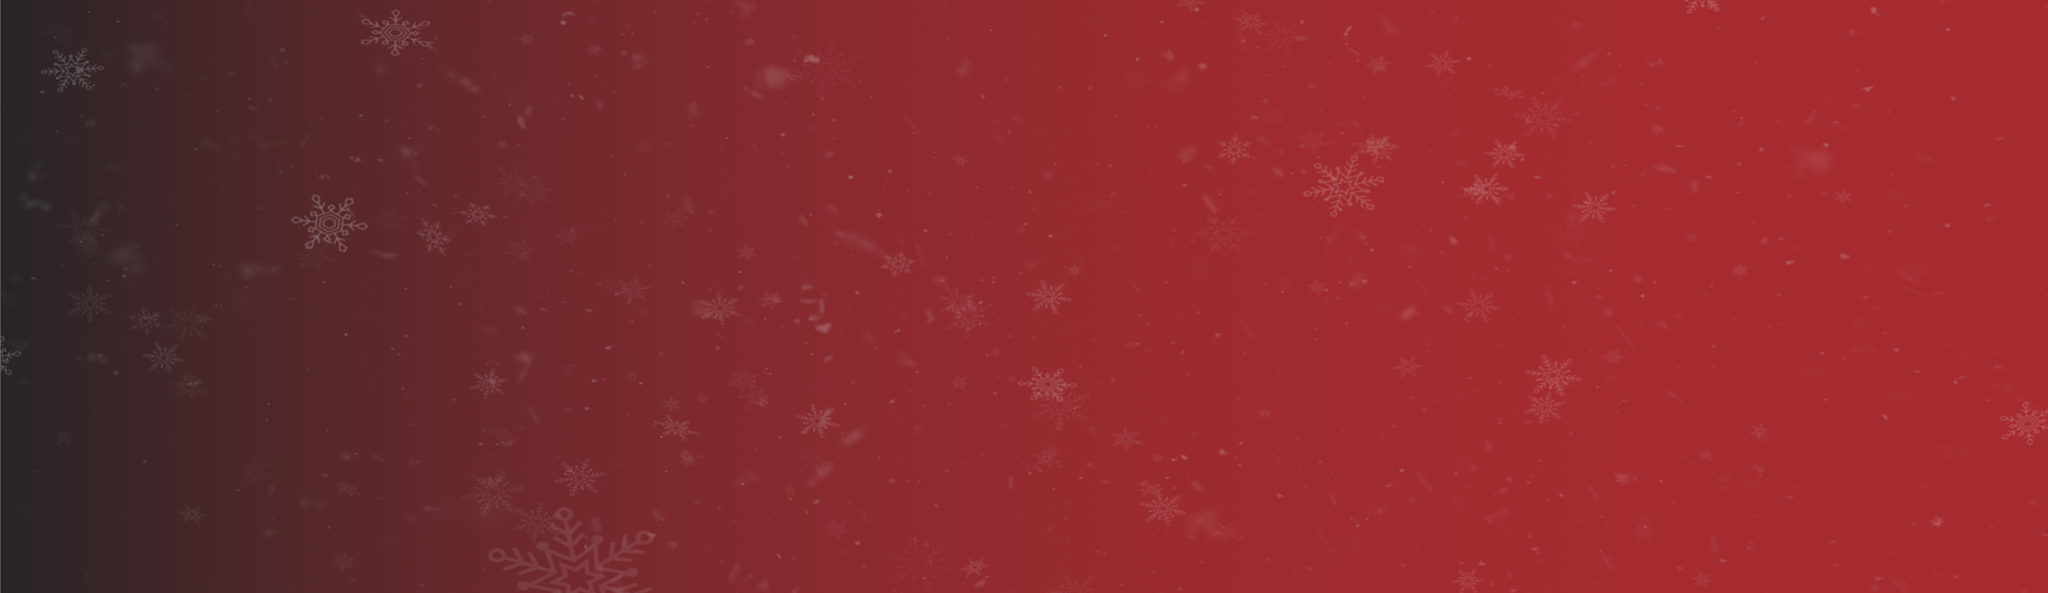 banner background image desktop advent-calendar